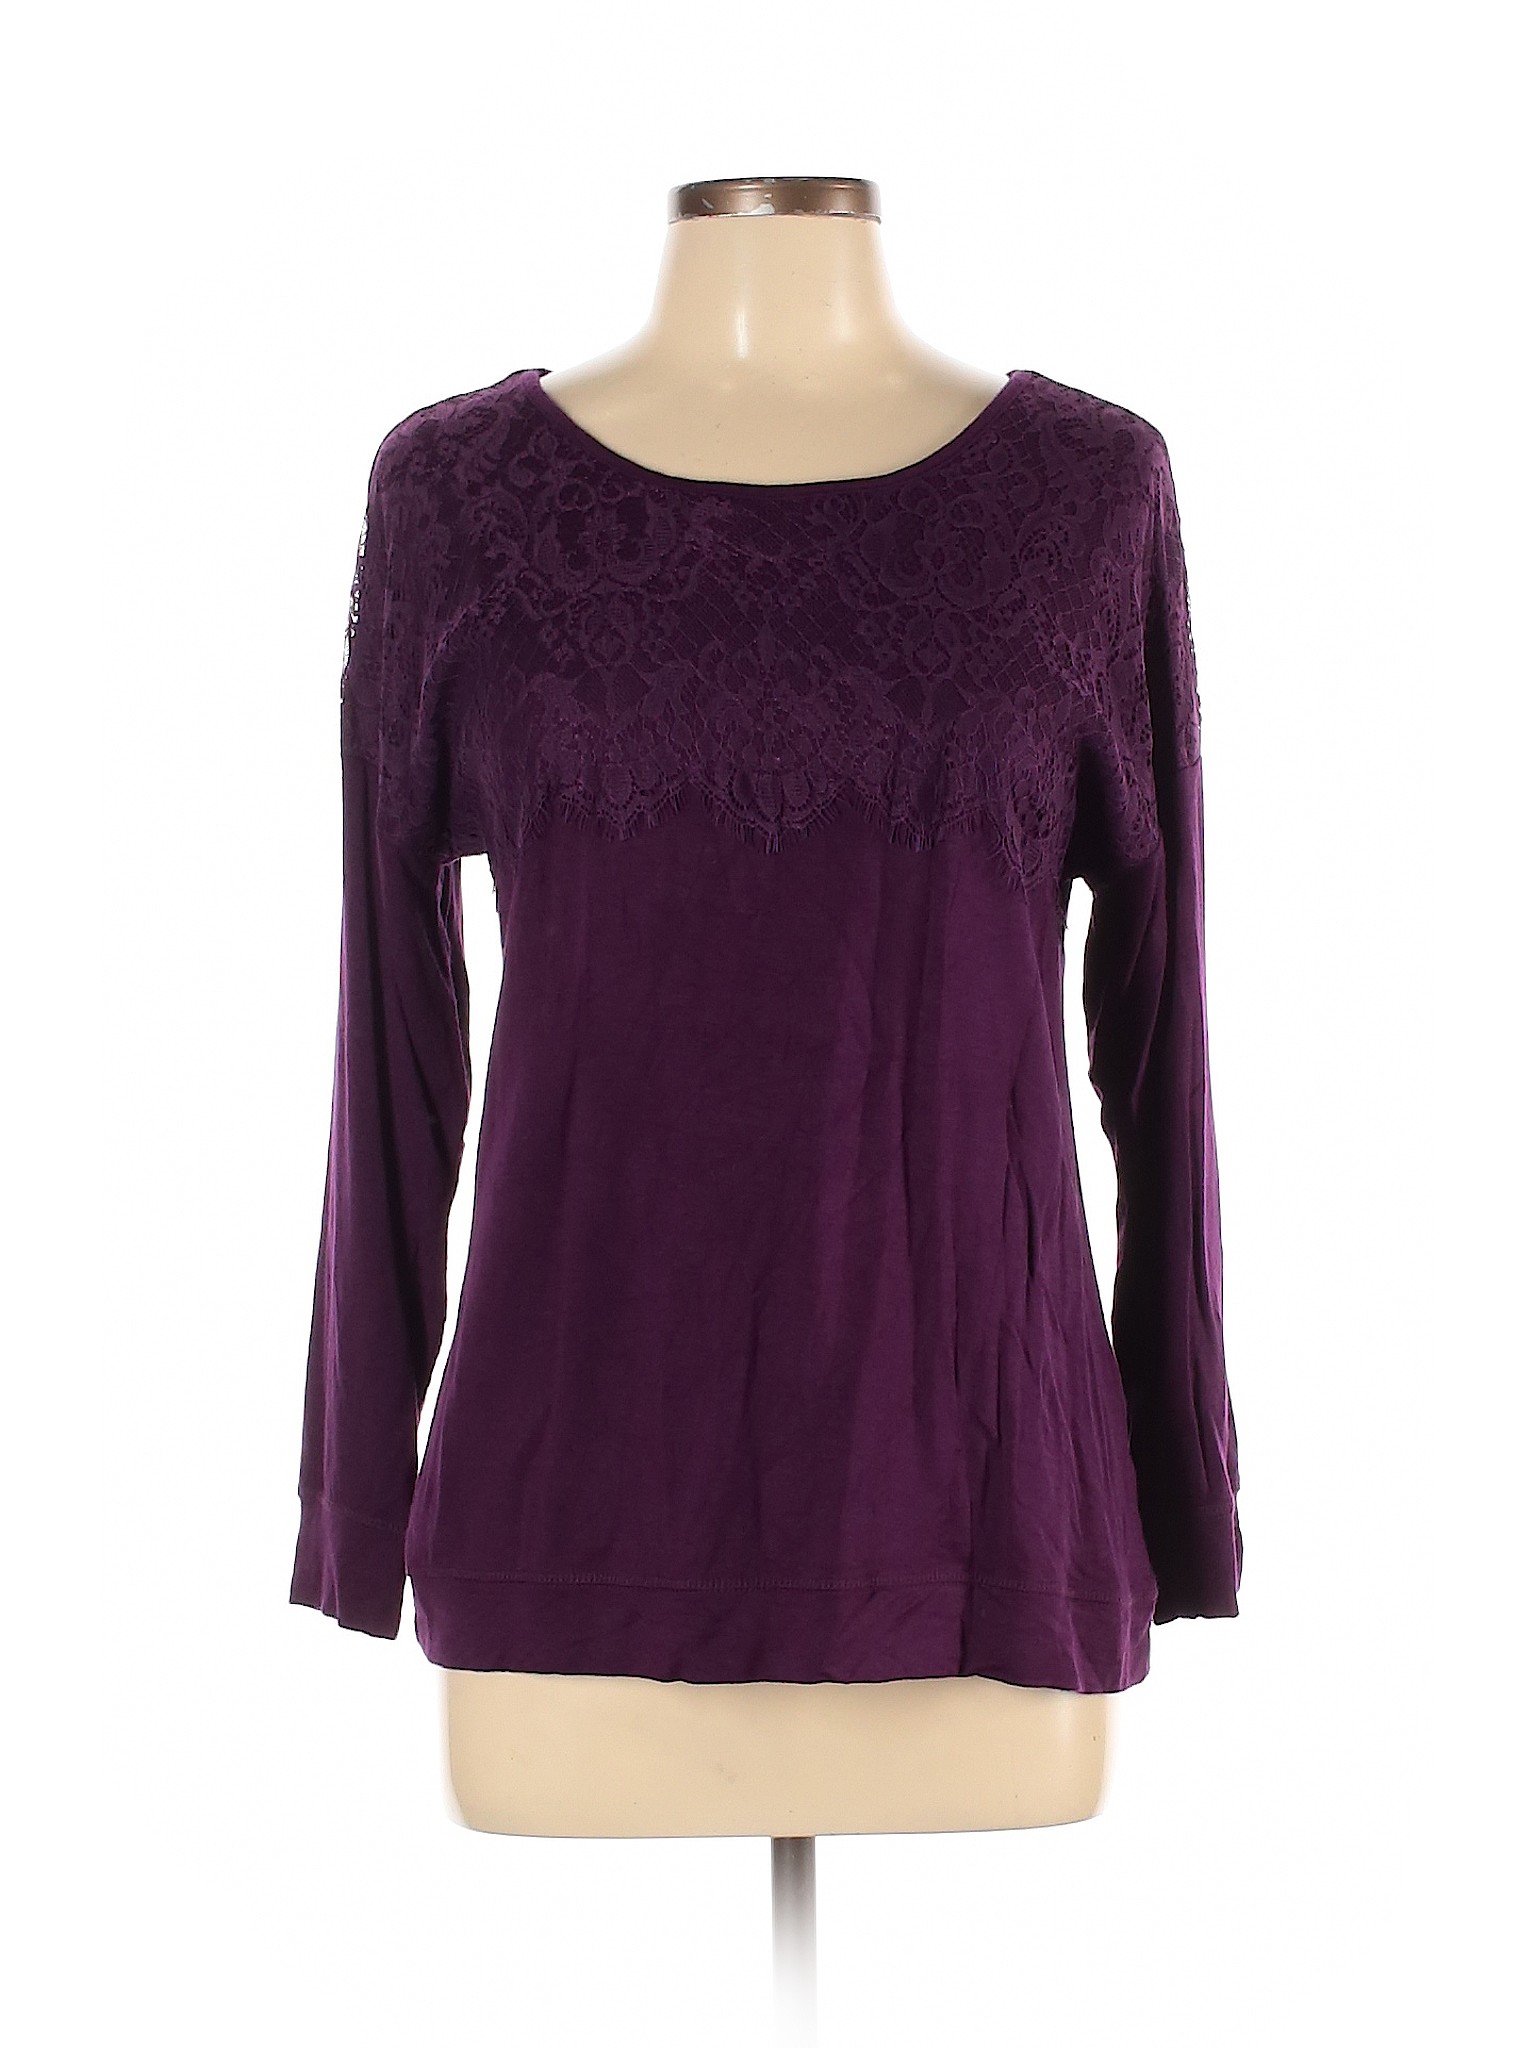 Westport Women Purple Long Sleeve Top L | eBay